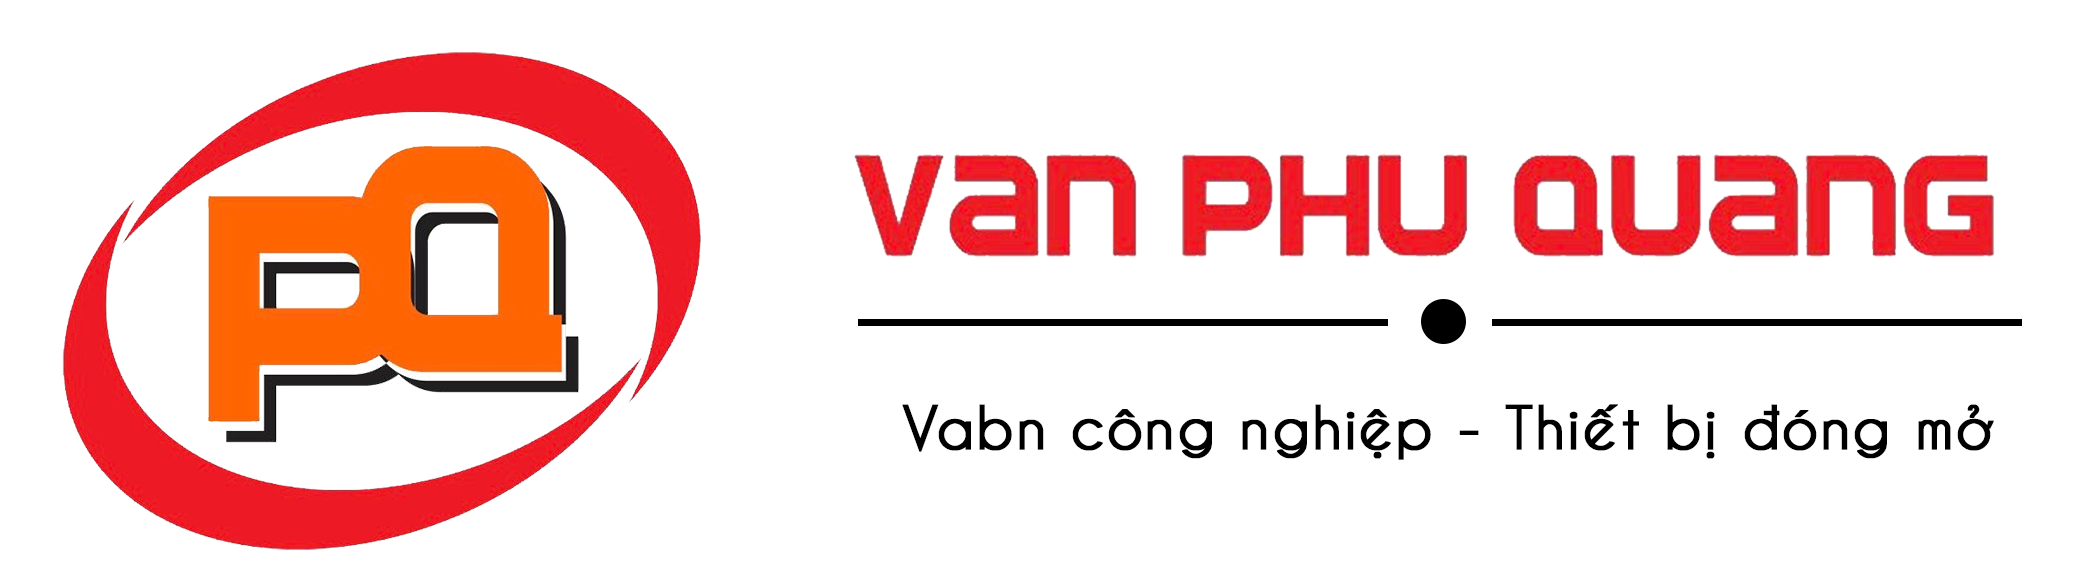 Van bướm vi sinh tay rút chính hãng tại Công ty Van Phú Quang